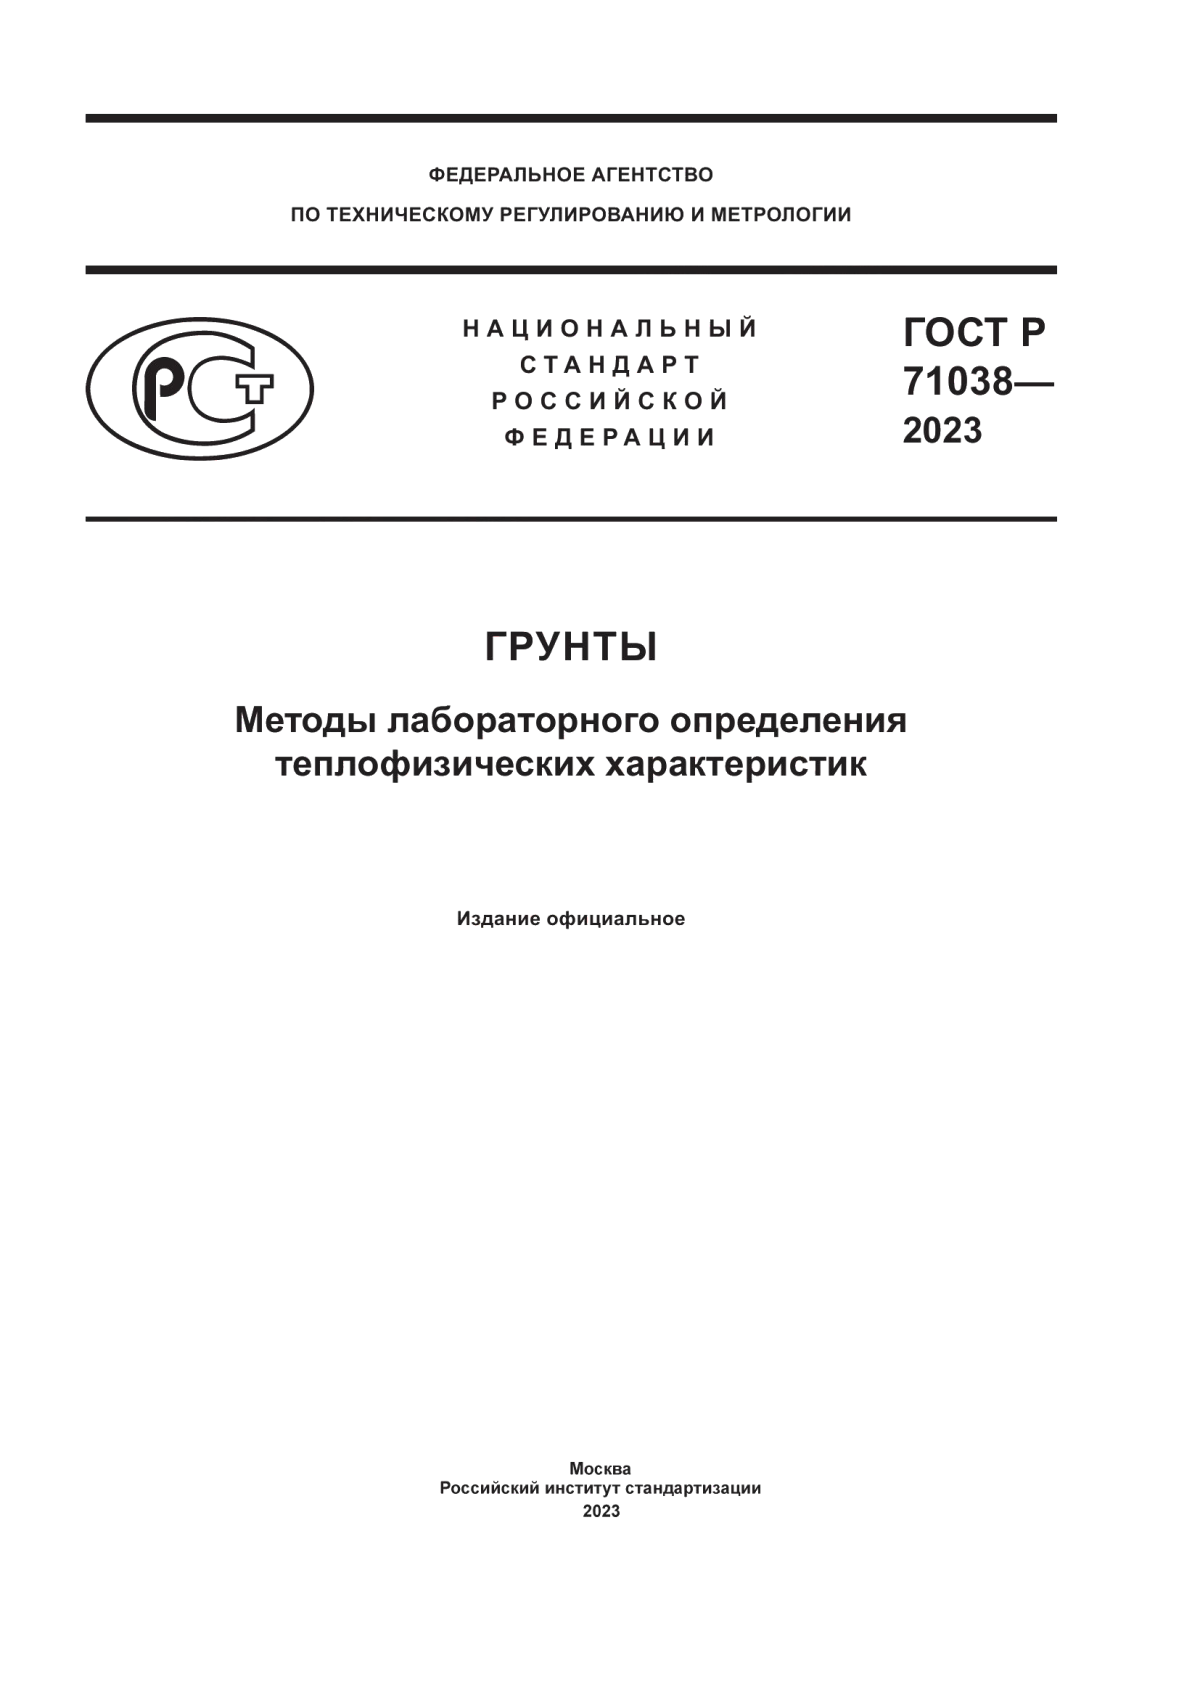 ГОСТ Р 71038-2023 Грунты. Методы лабораторного определения теплофизических характеристик